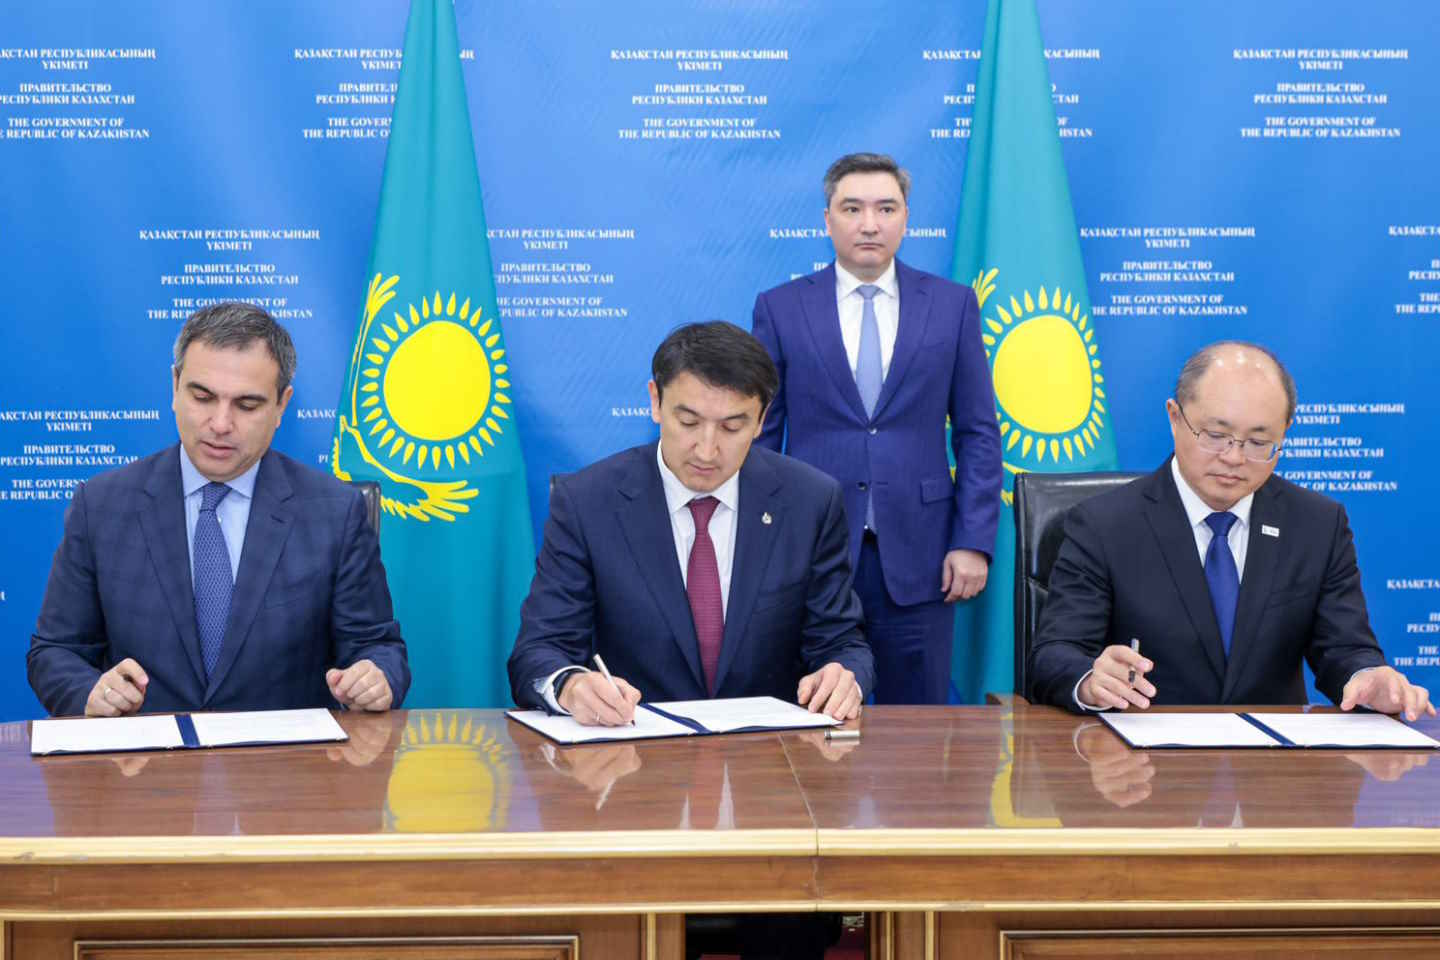 Новости Казахстана / Экономика в Казахстане / Производство полиэтилена хотят запустить в Казахстане